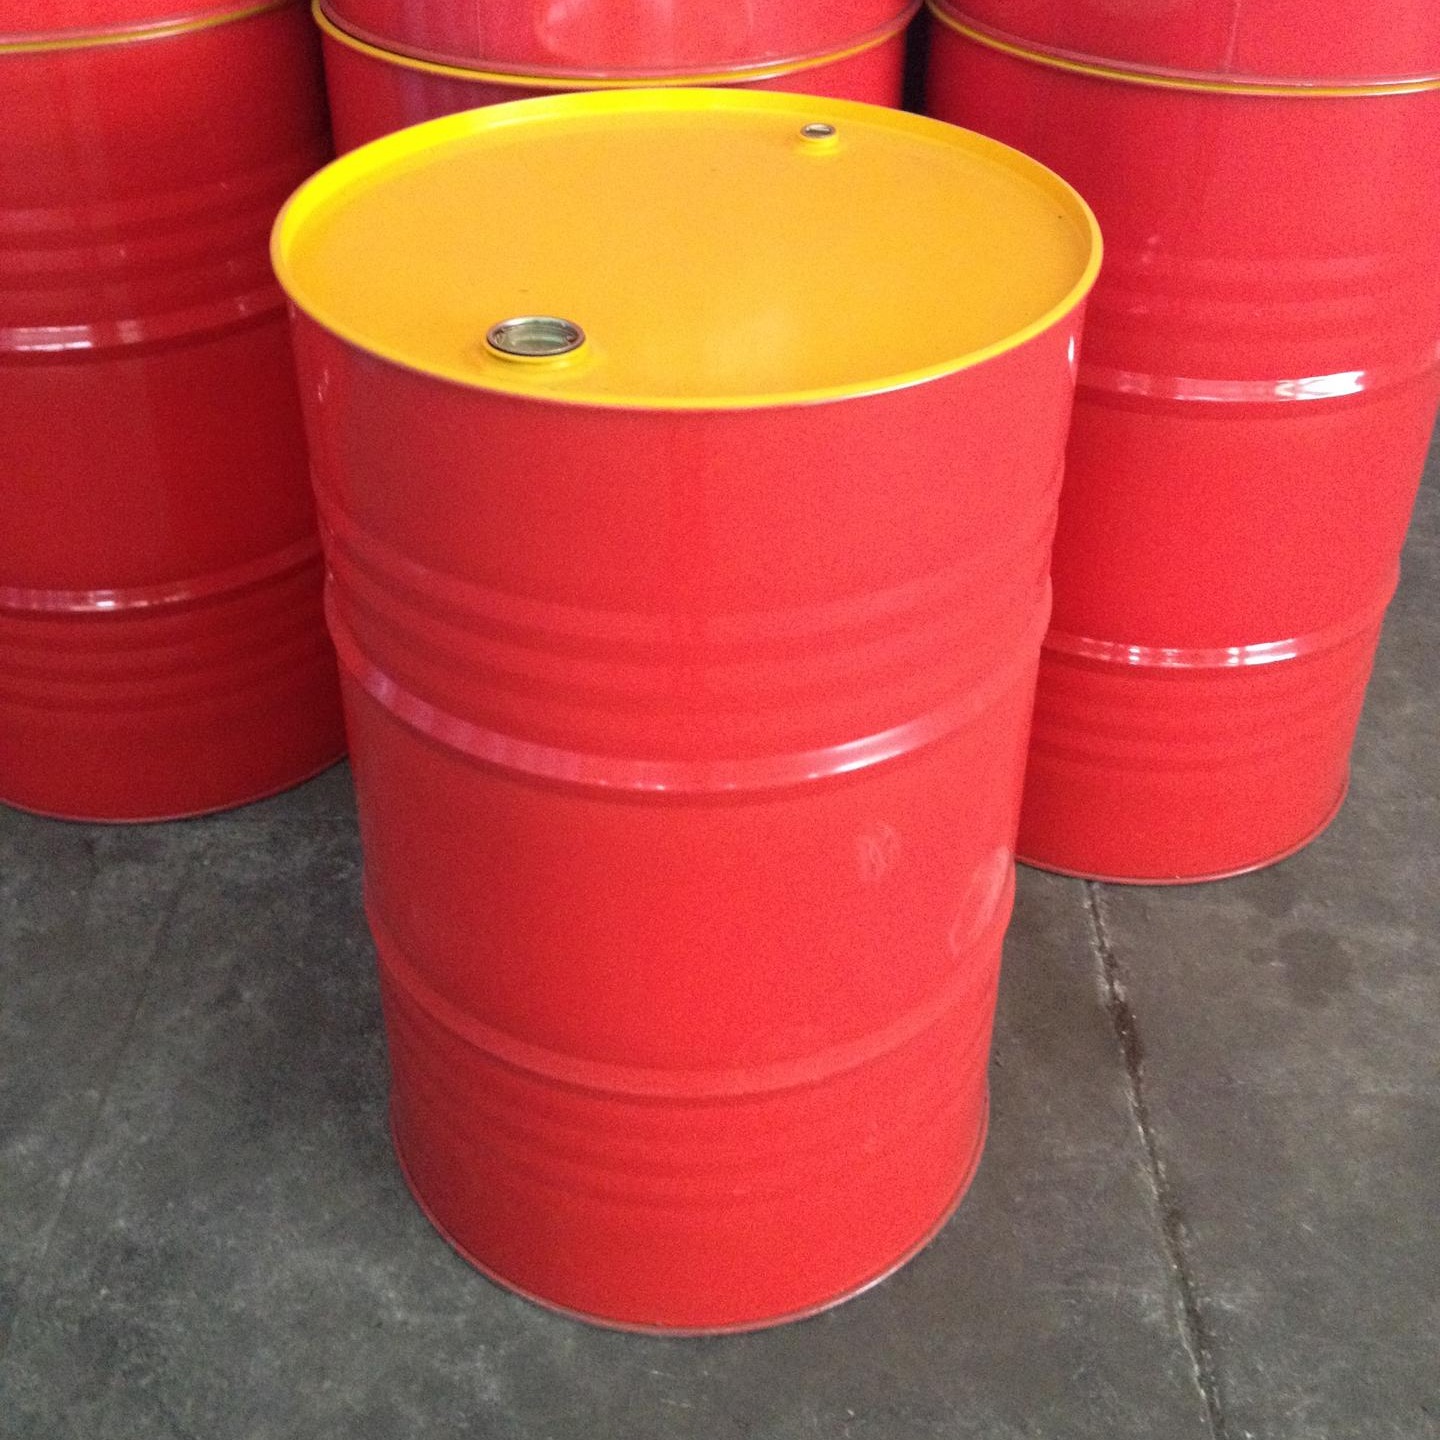 出售200l铁桶、二手铁桶、莞兴二手大铁桶、200L铁桶价格铁桶批发厂家